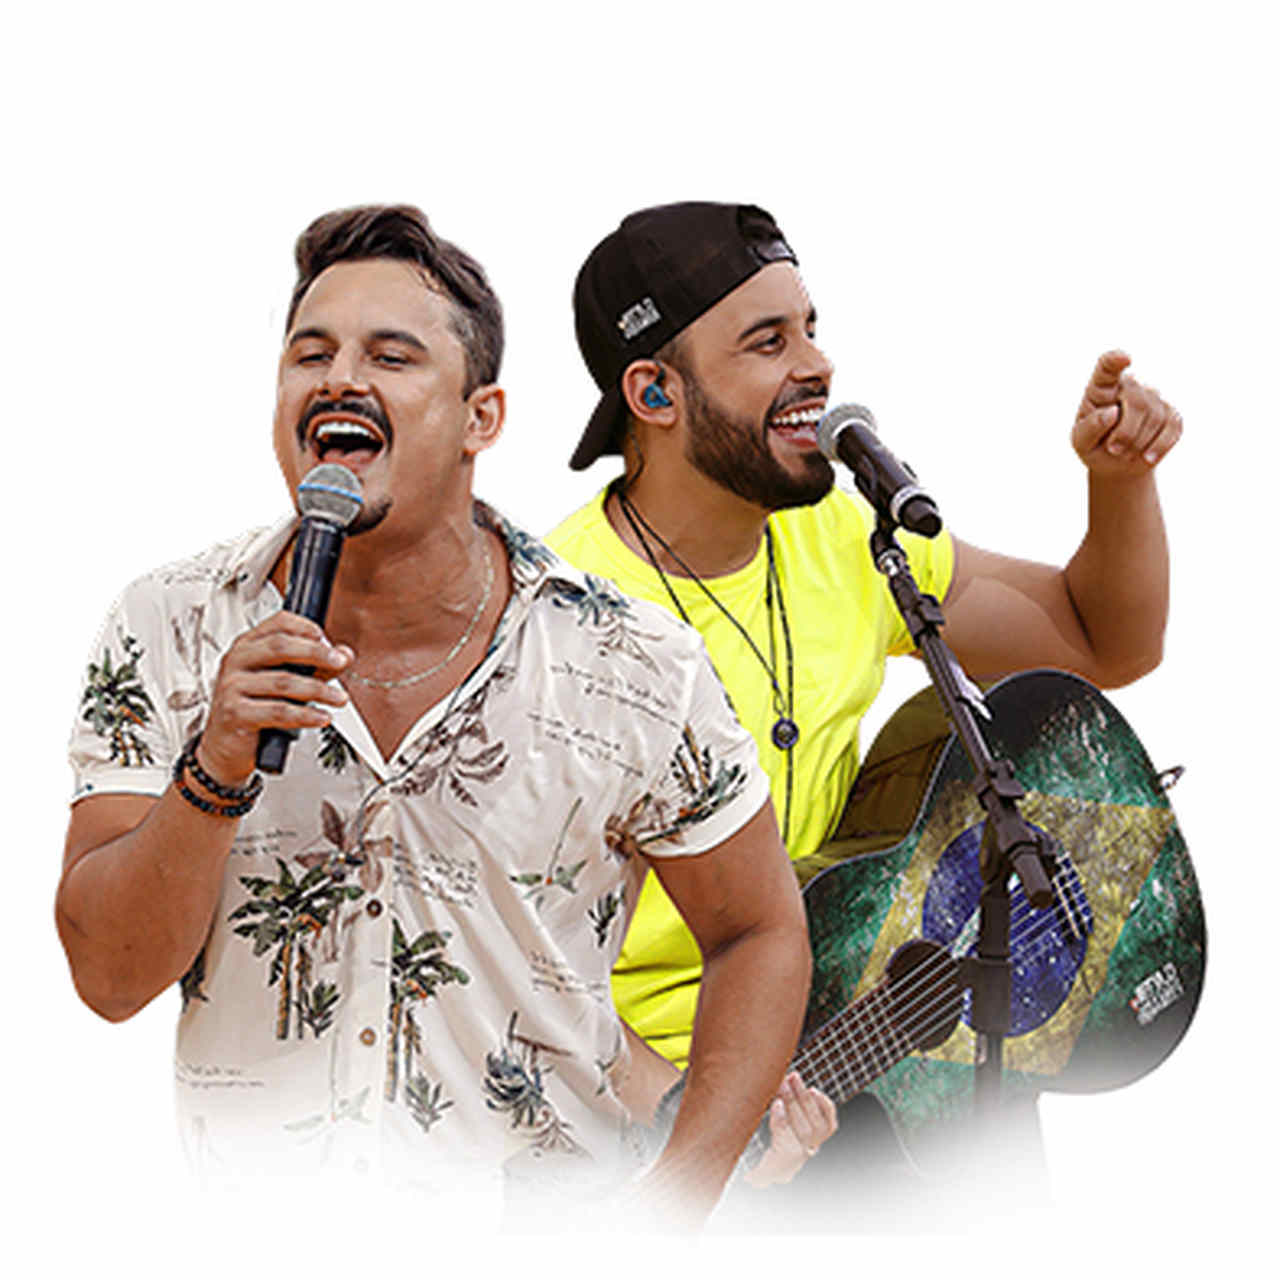 Lançamento da Festa do Peão de Barretos terá shows com Guilherme & Benuto, Clayton & Romário e convidados no Villa Country, em São Paulo 42